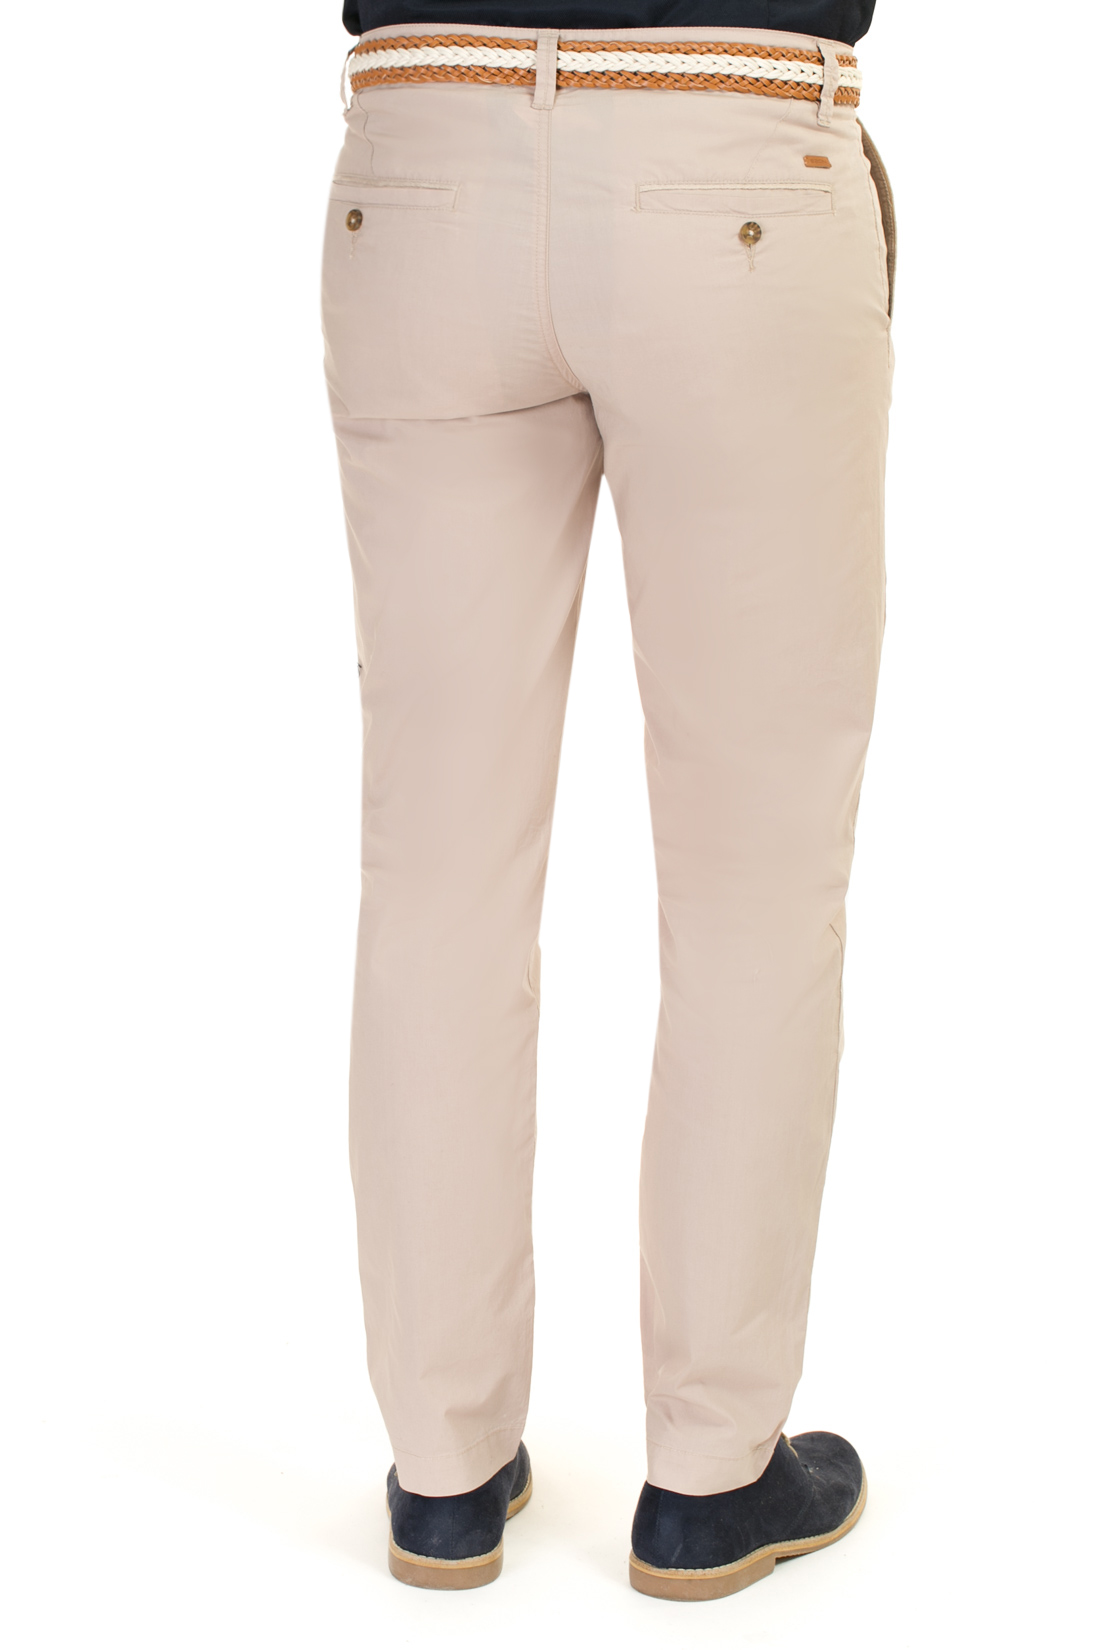 Повседневные брюки из хлопка (арт. baon B797014), размер M, цвет бежевый Повседневные брюки из хлопка (арт. baon B797014) - фото 2